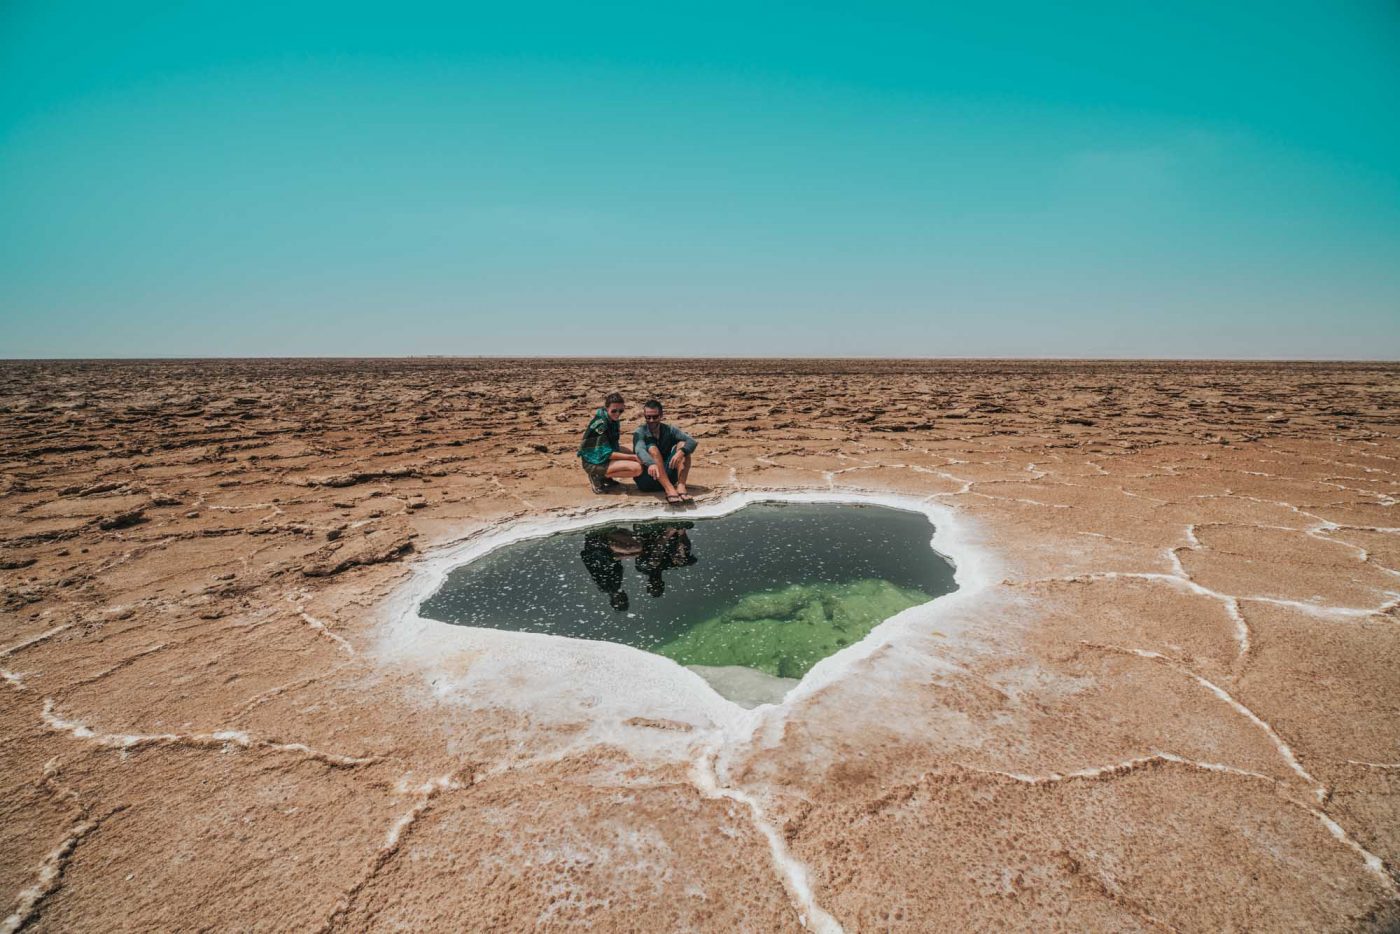 欣赏位于达纳基尔洼地达洛尔地区干旱景观中的一个小盐湖